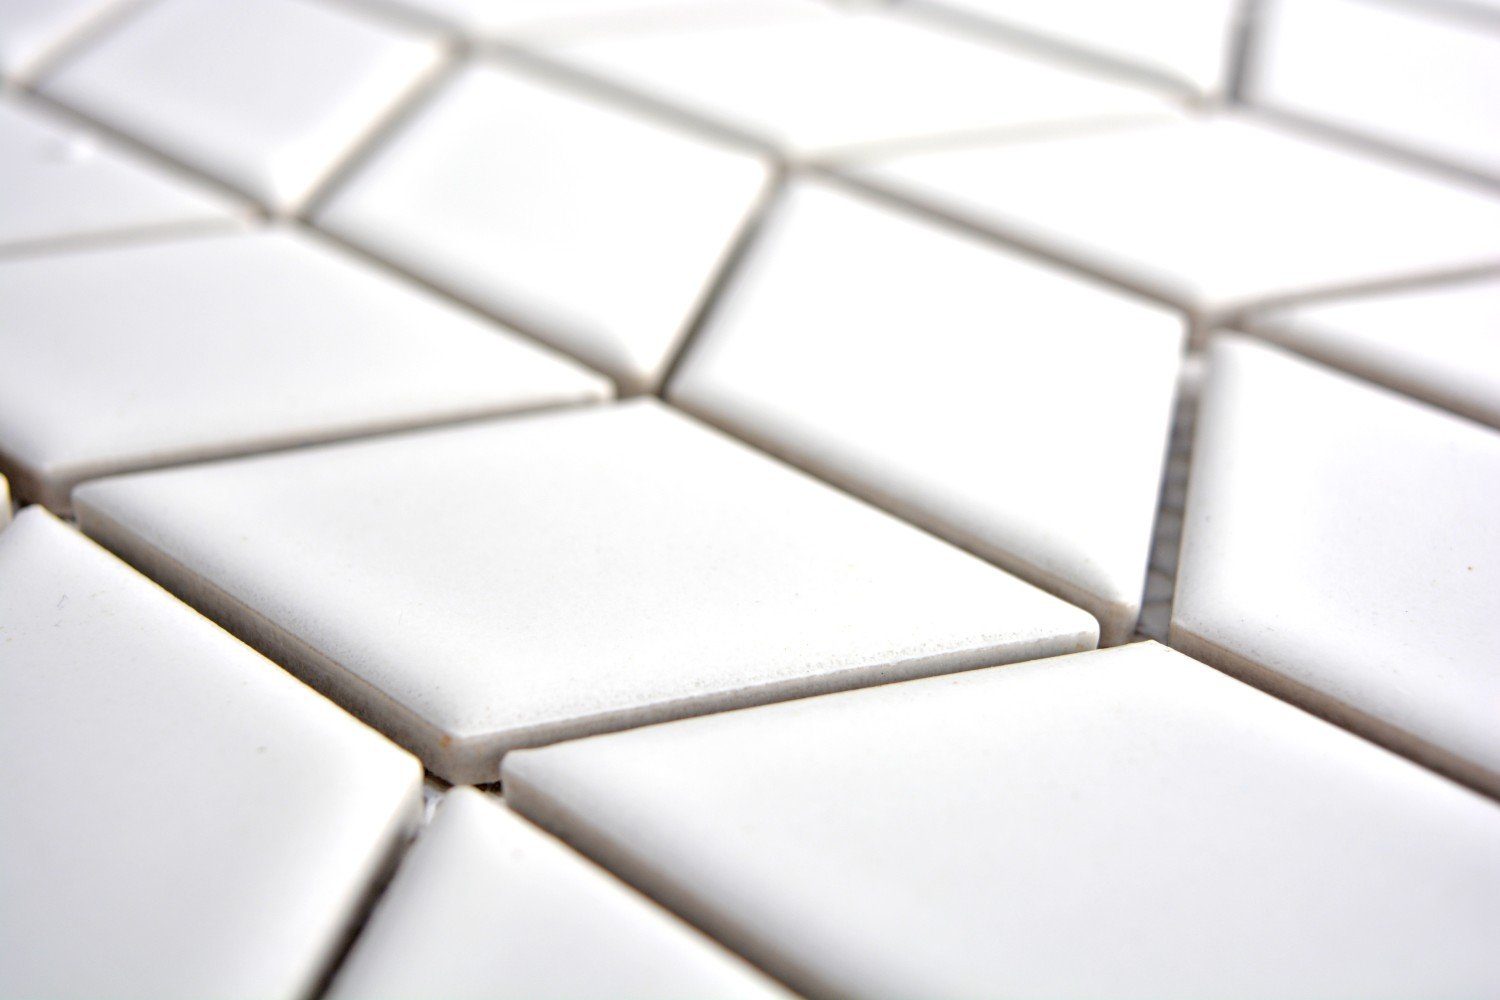 Mosani Mosaikfliesen Retro Fliese Diamant glänzend Mosaik Küche Welle Keramik weiß